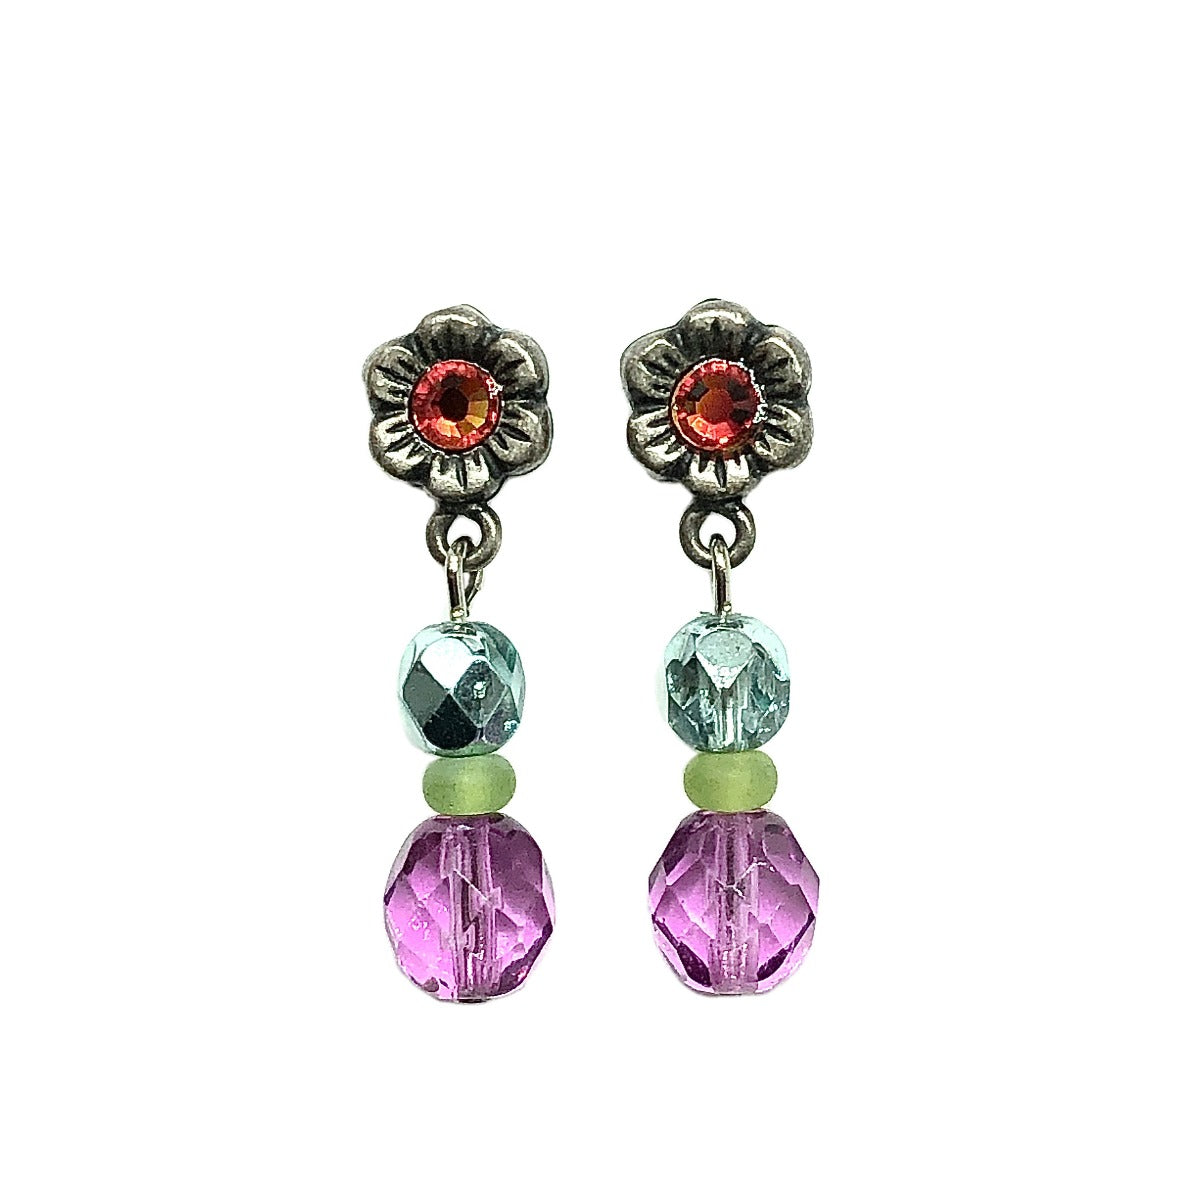 Blingschlingers - Whimsical Vibrant Pink & Blue Beaded Flower Dangle Earrings